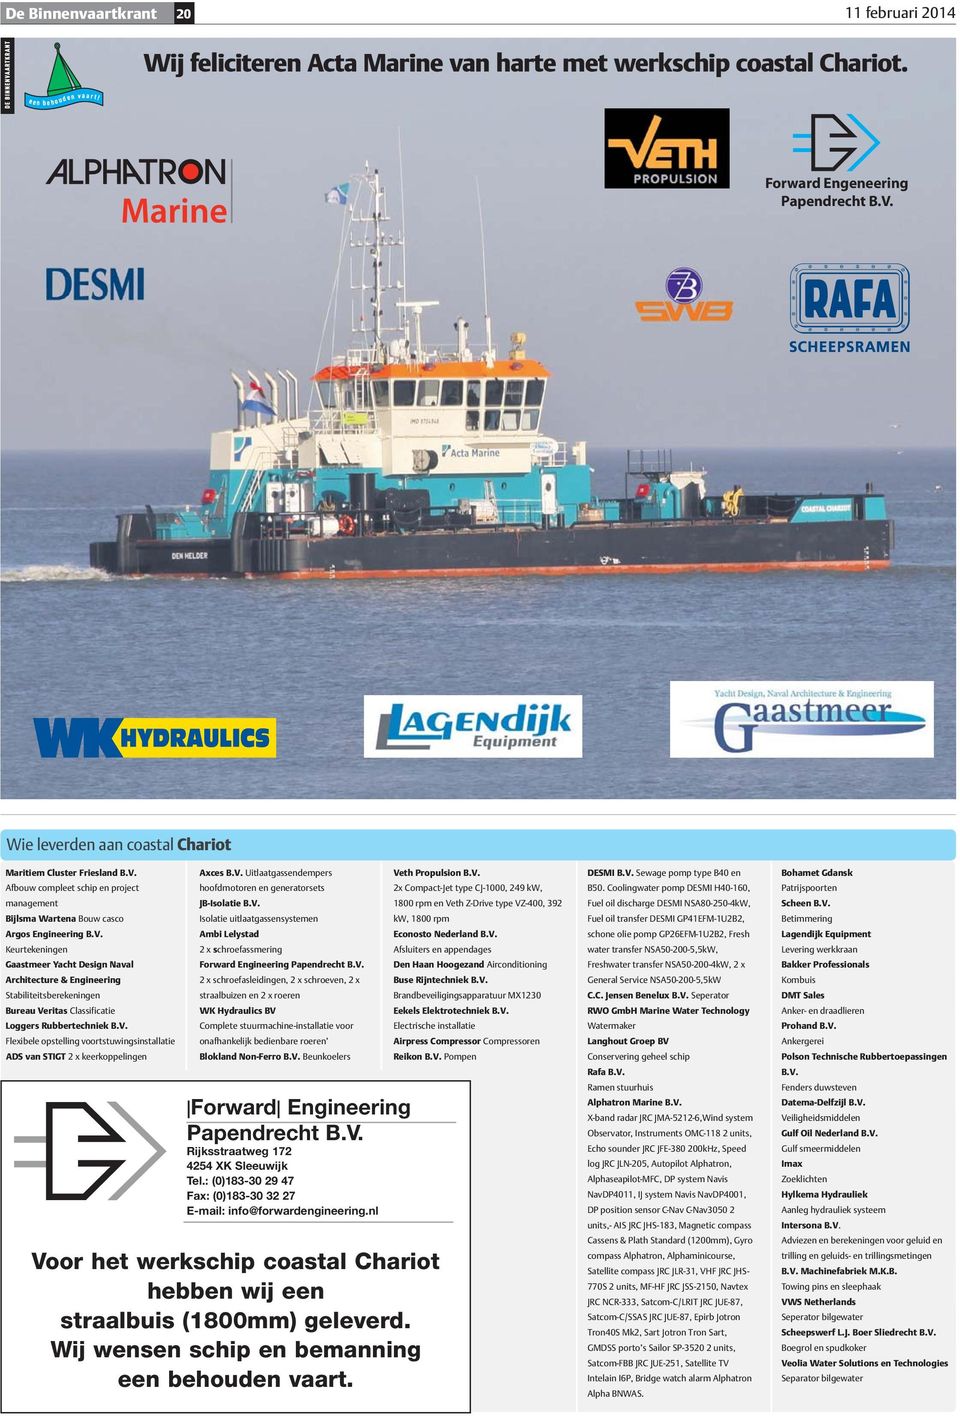 Afbouw compleet schip en project management Bijlsma Wartena Bouw casco Argos Engineering B.V.